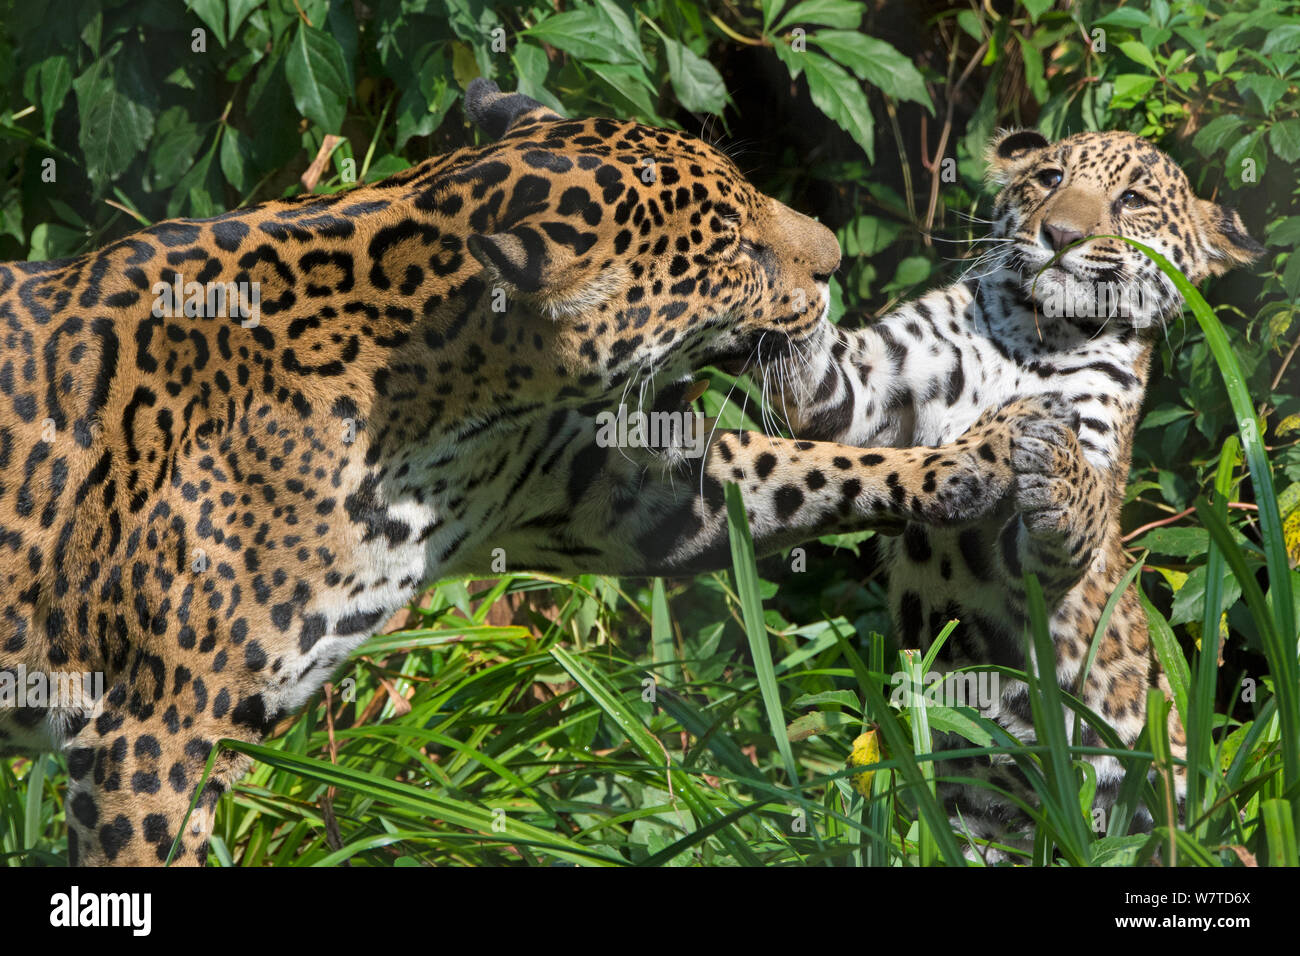 Jaguar femmina (Panthera onca) giocando con il suo cucciolo, captive, nativo di America Centrale e Meridionale. Foto Stock